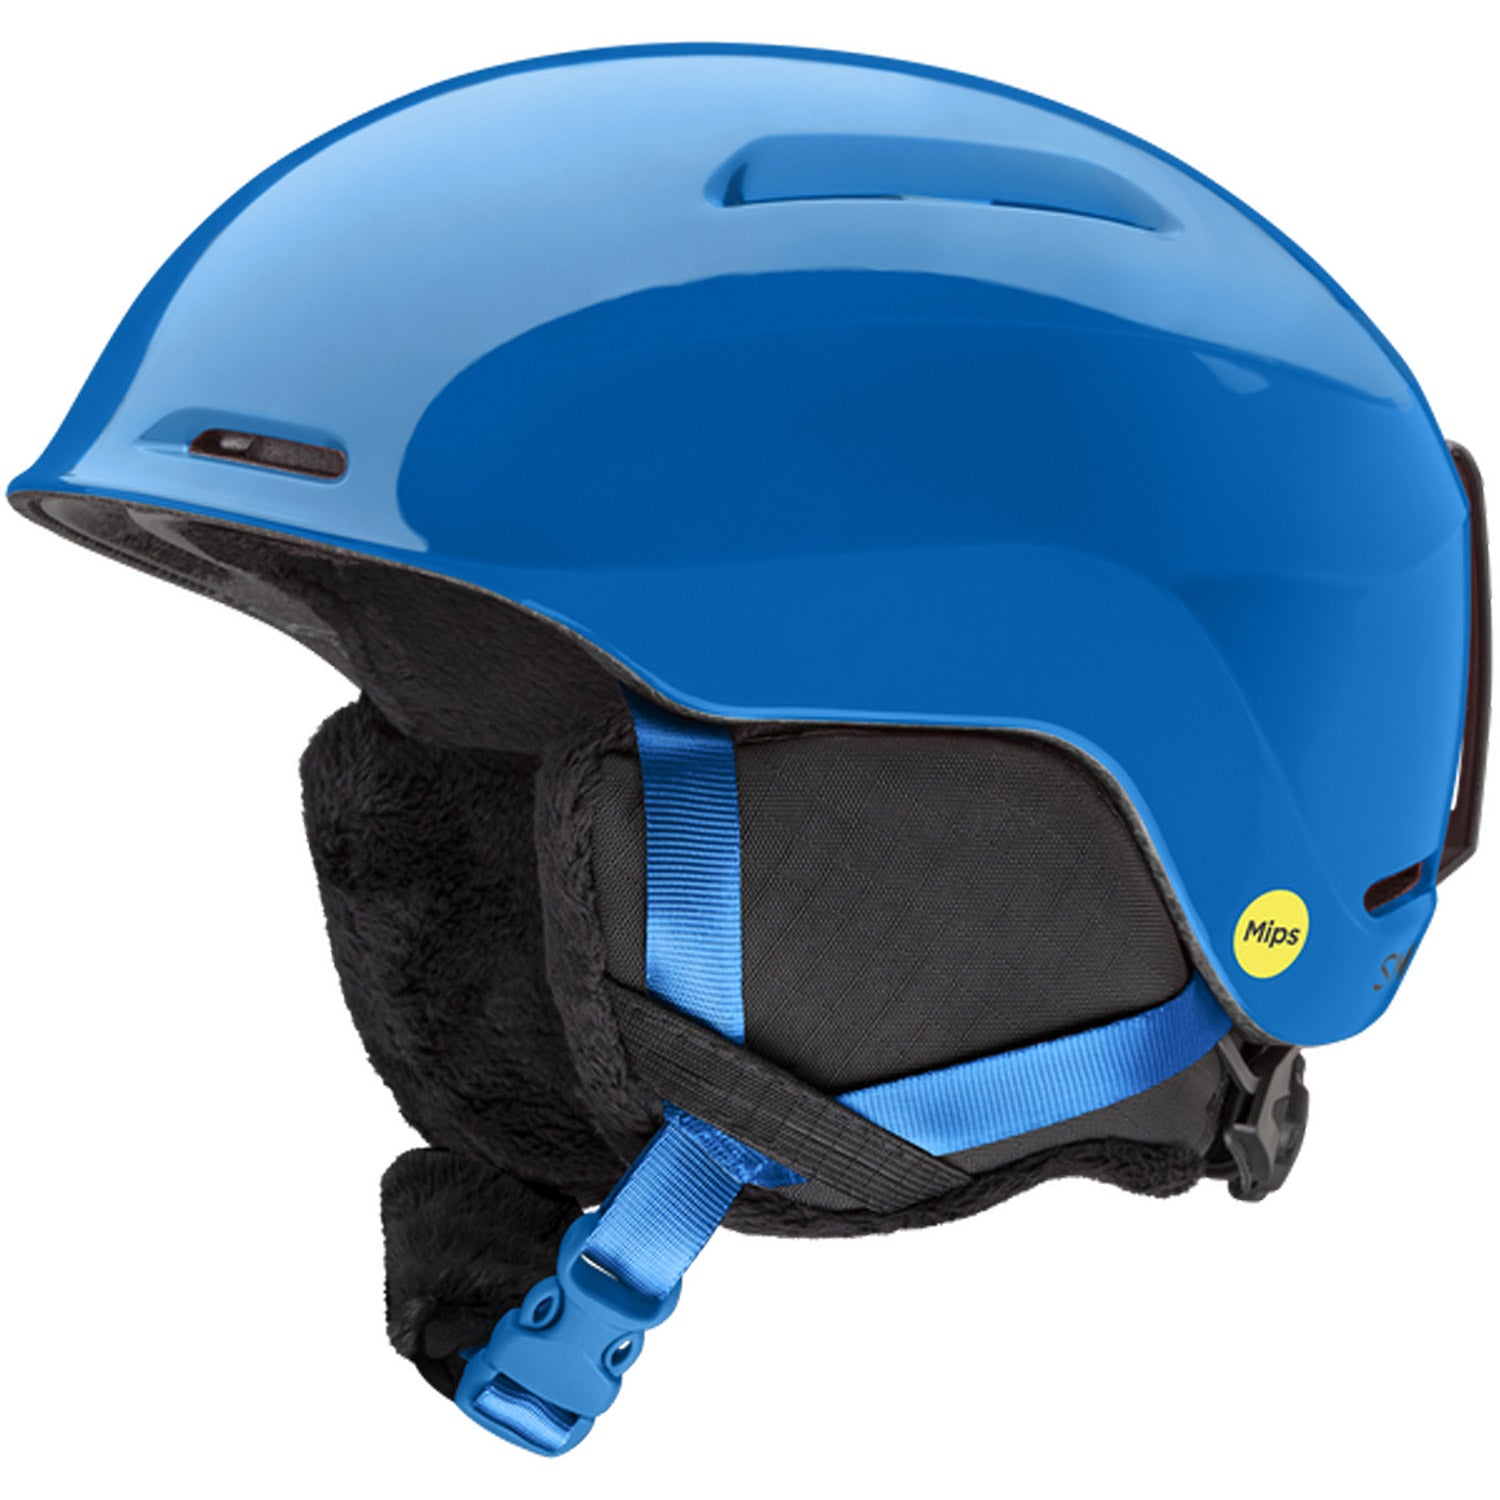 Glide Jr. MIPS Snow Helmet